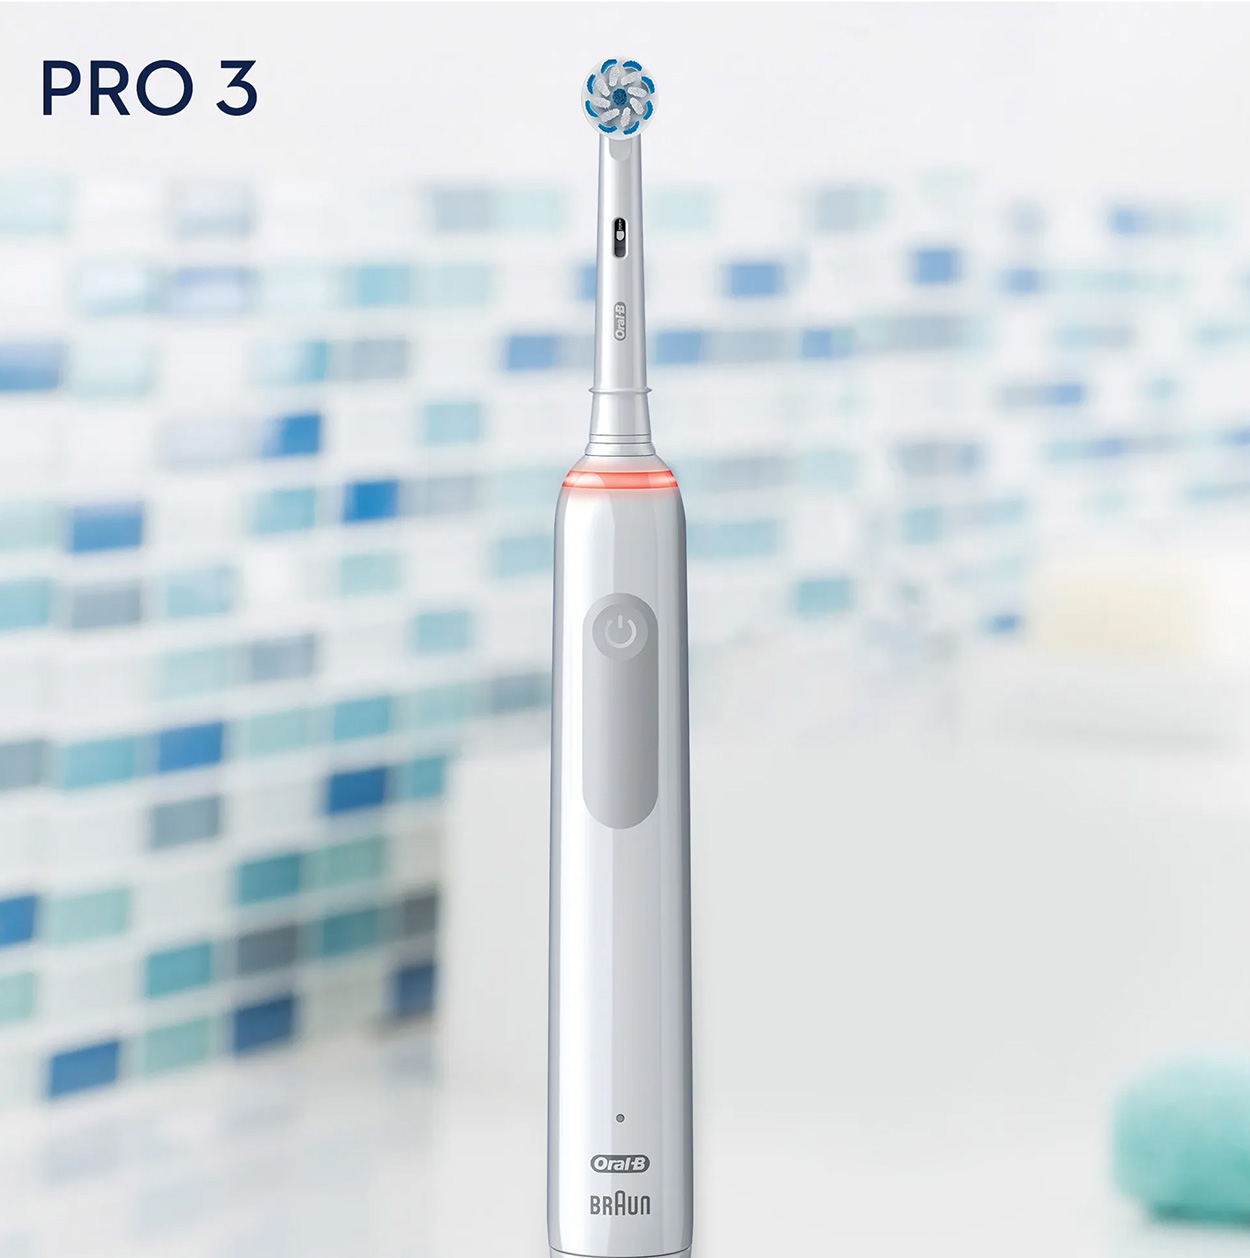 ORAL-B Pro 3 Zahnbürste Elektrische weiß 3900